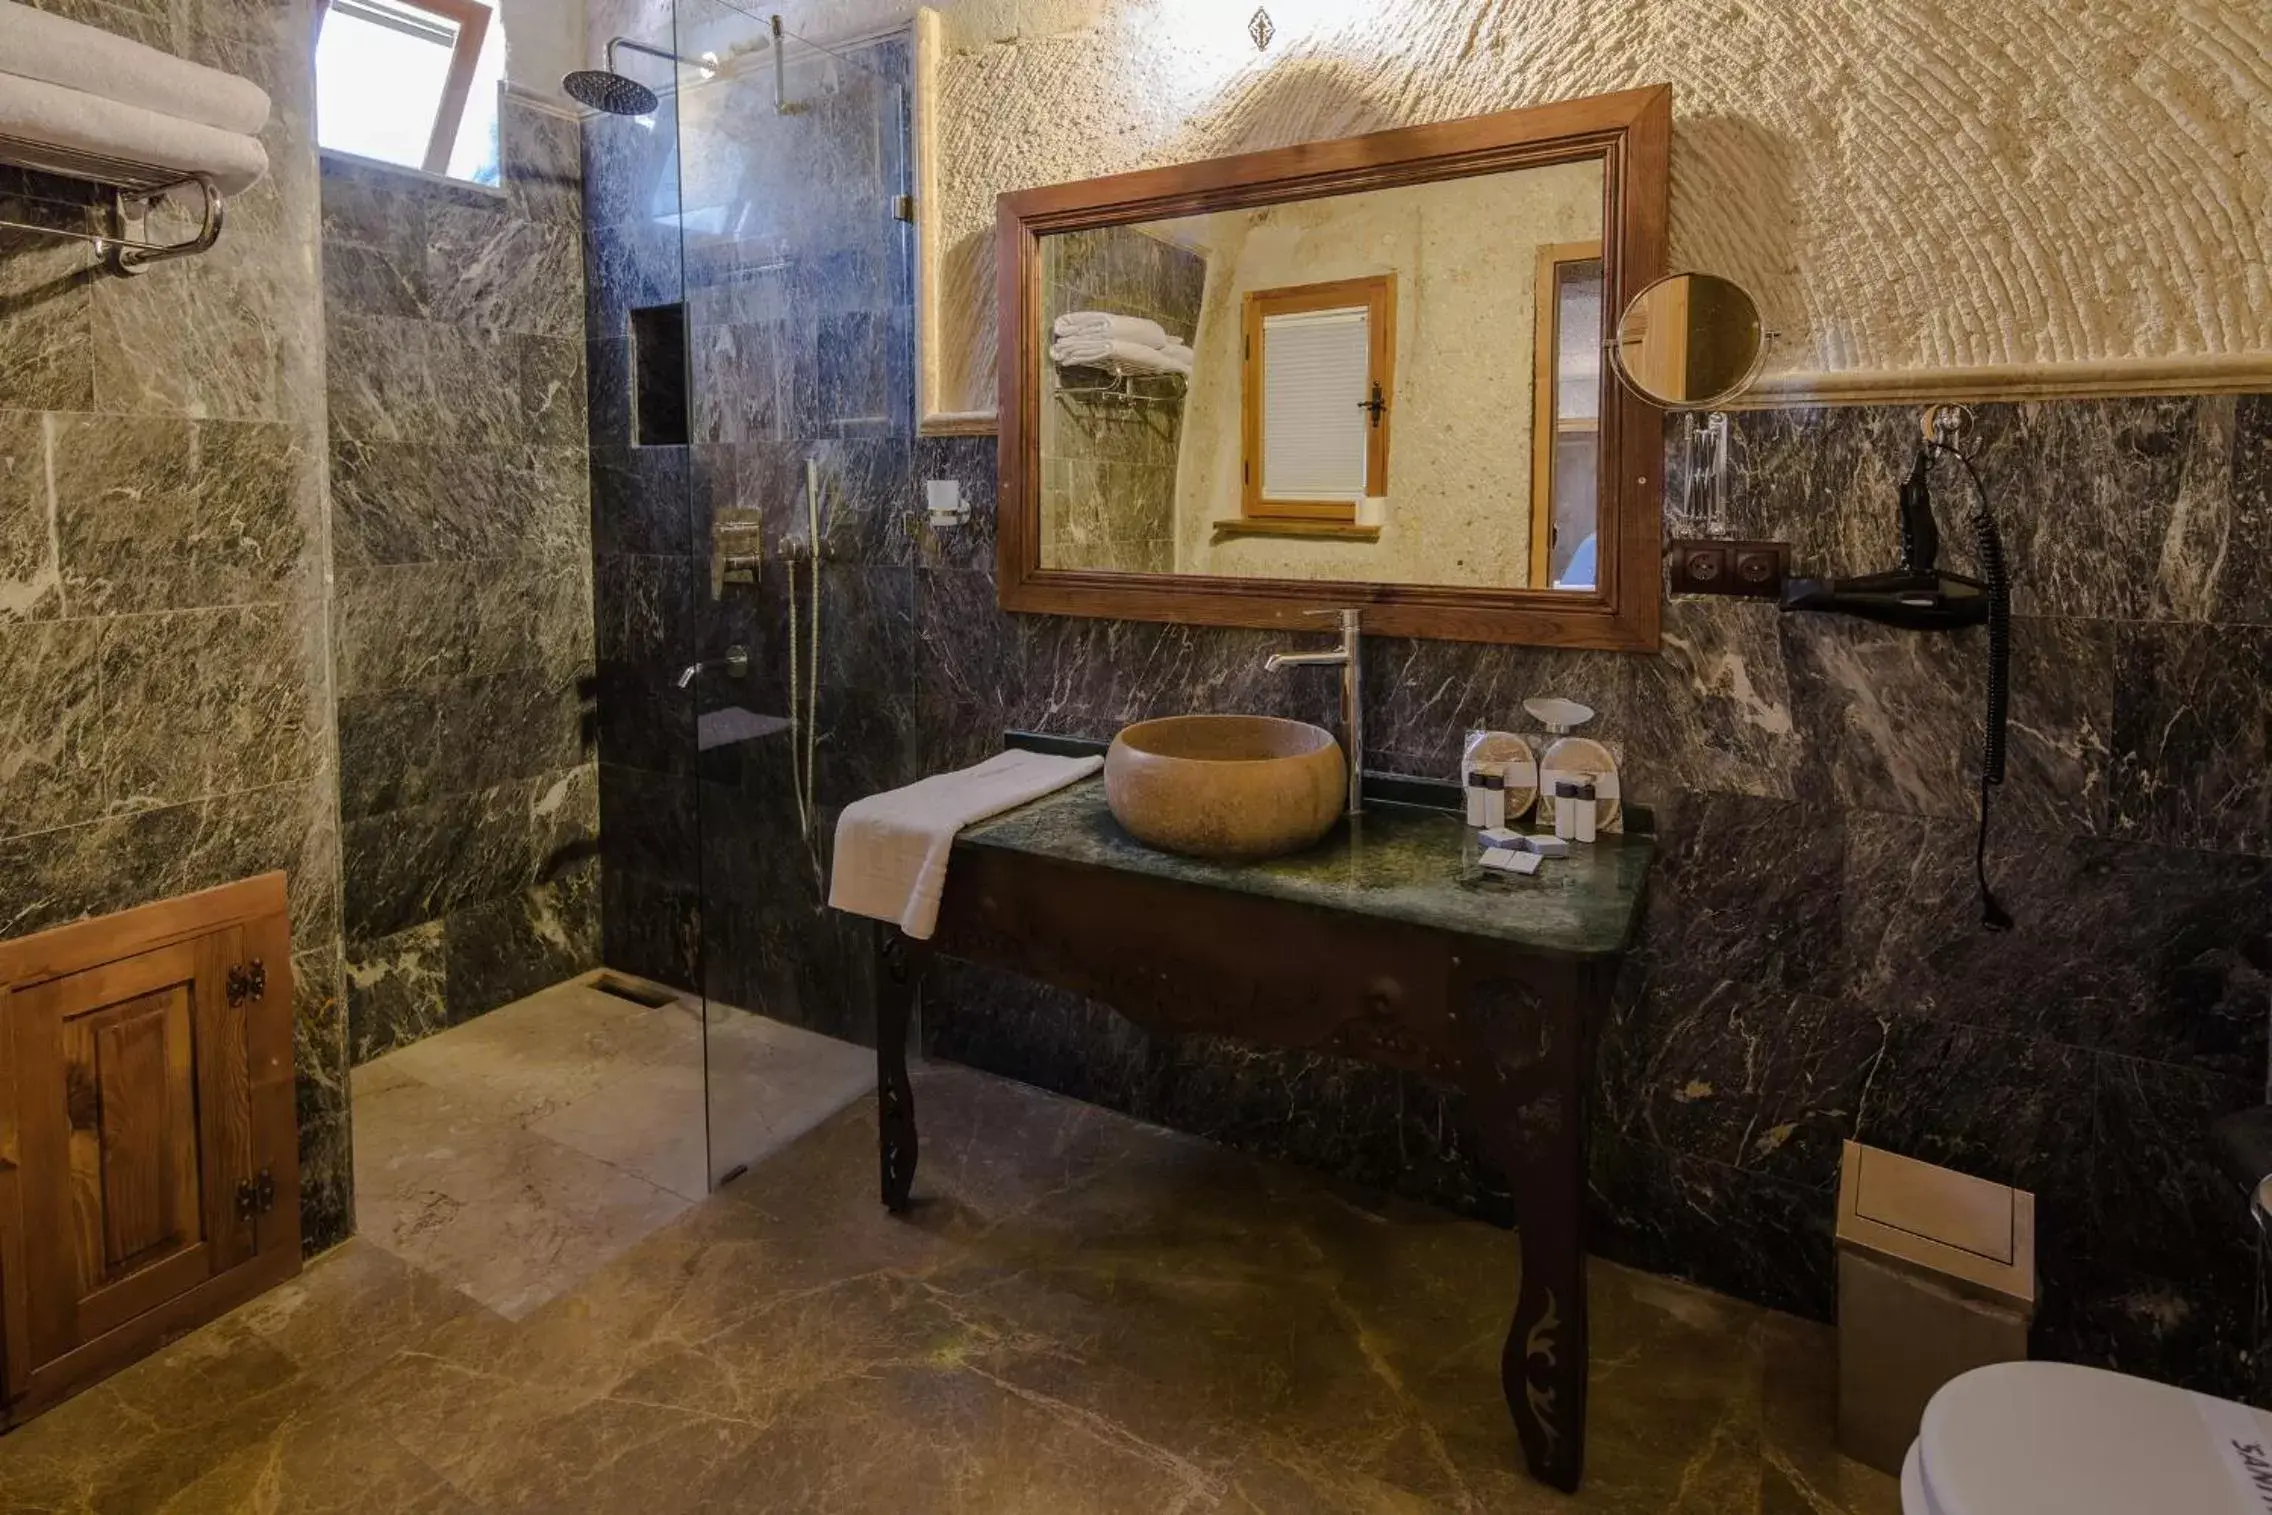 Toilet, Bathroom in Lunar Cappadocia Hotel